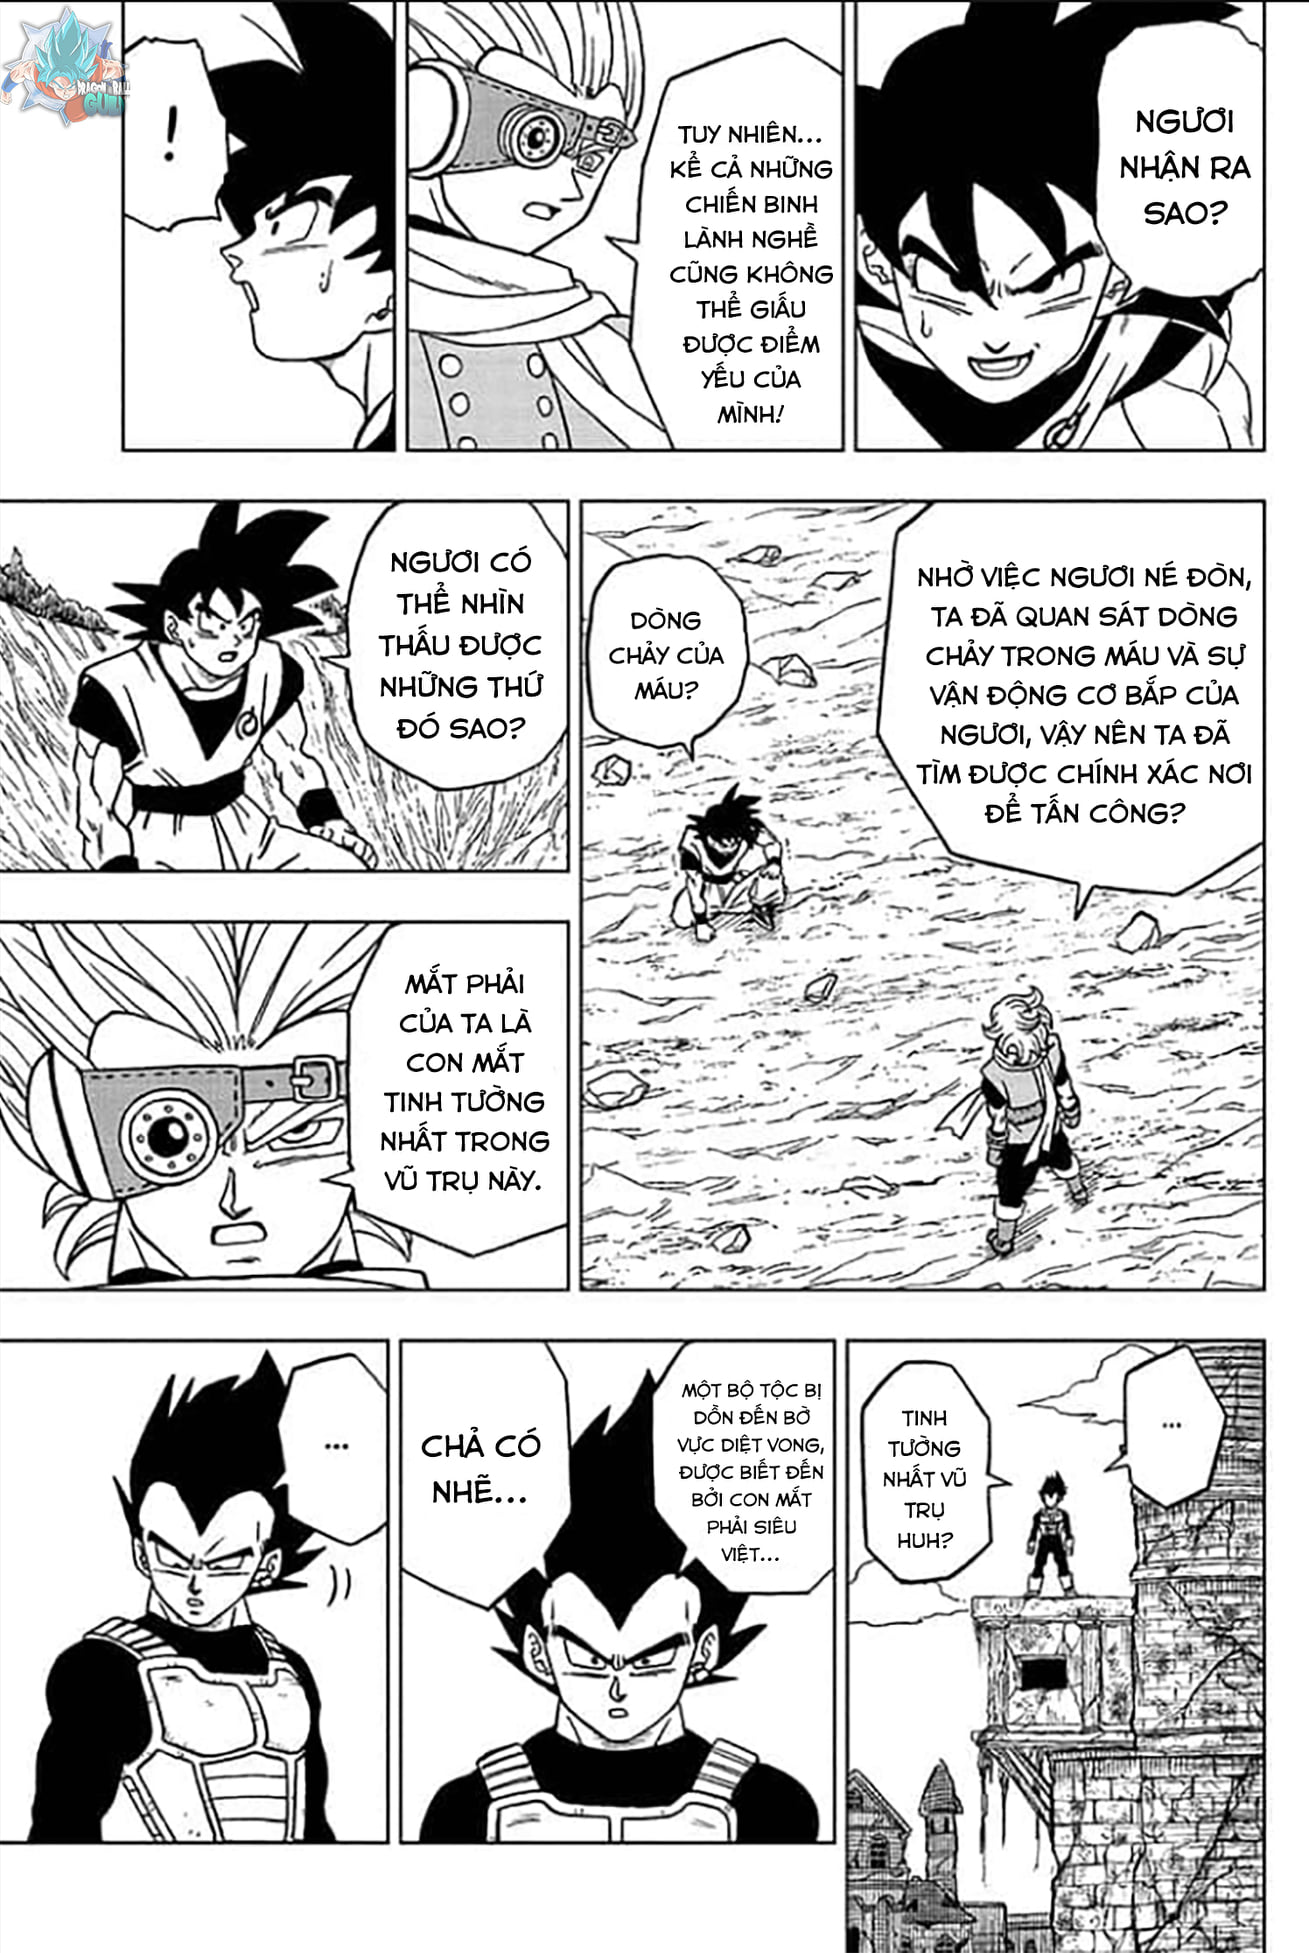 Hãy khám phá sự trở lại của Goku trong Dragon Ball Super với những hình ảnh mới nhất về anh ấy! Hình ảnh liên quan sẽ cho bạn thấy những pha hành động đặc sắc của nhân vật ưa thích này và cách anh ấy đánh bại những đối thủ khó khăn.